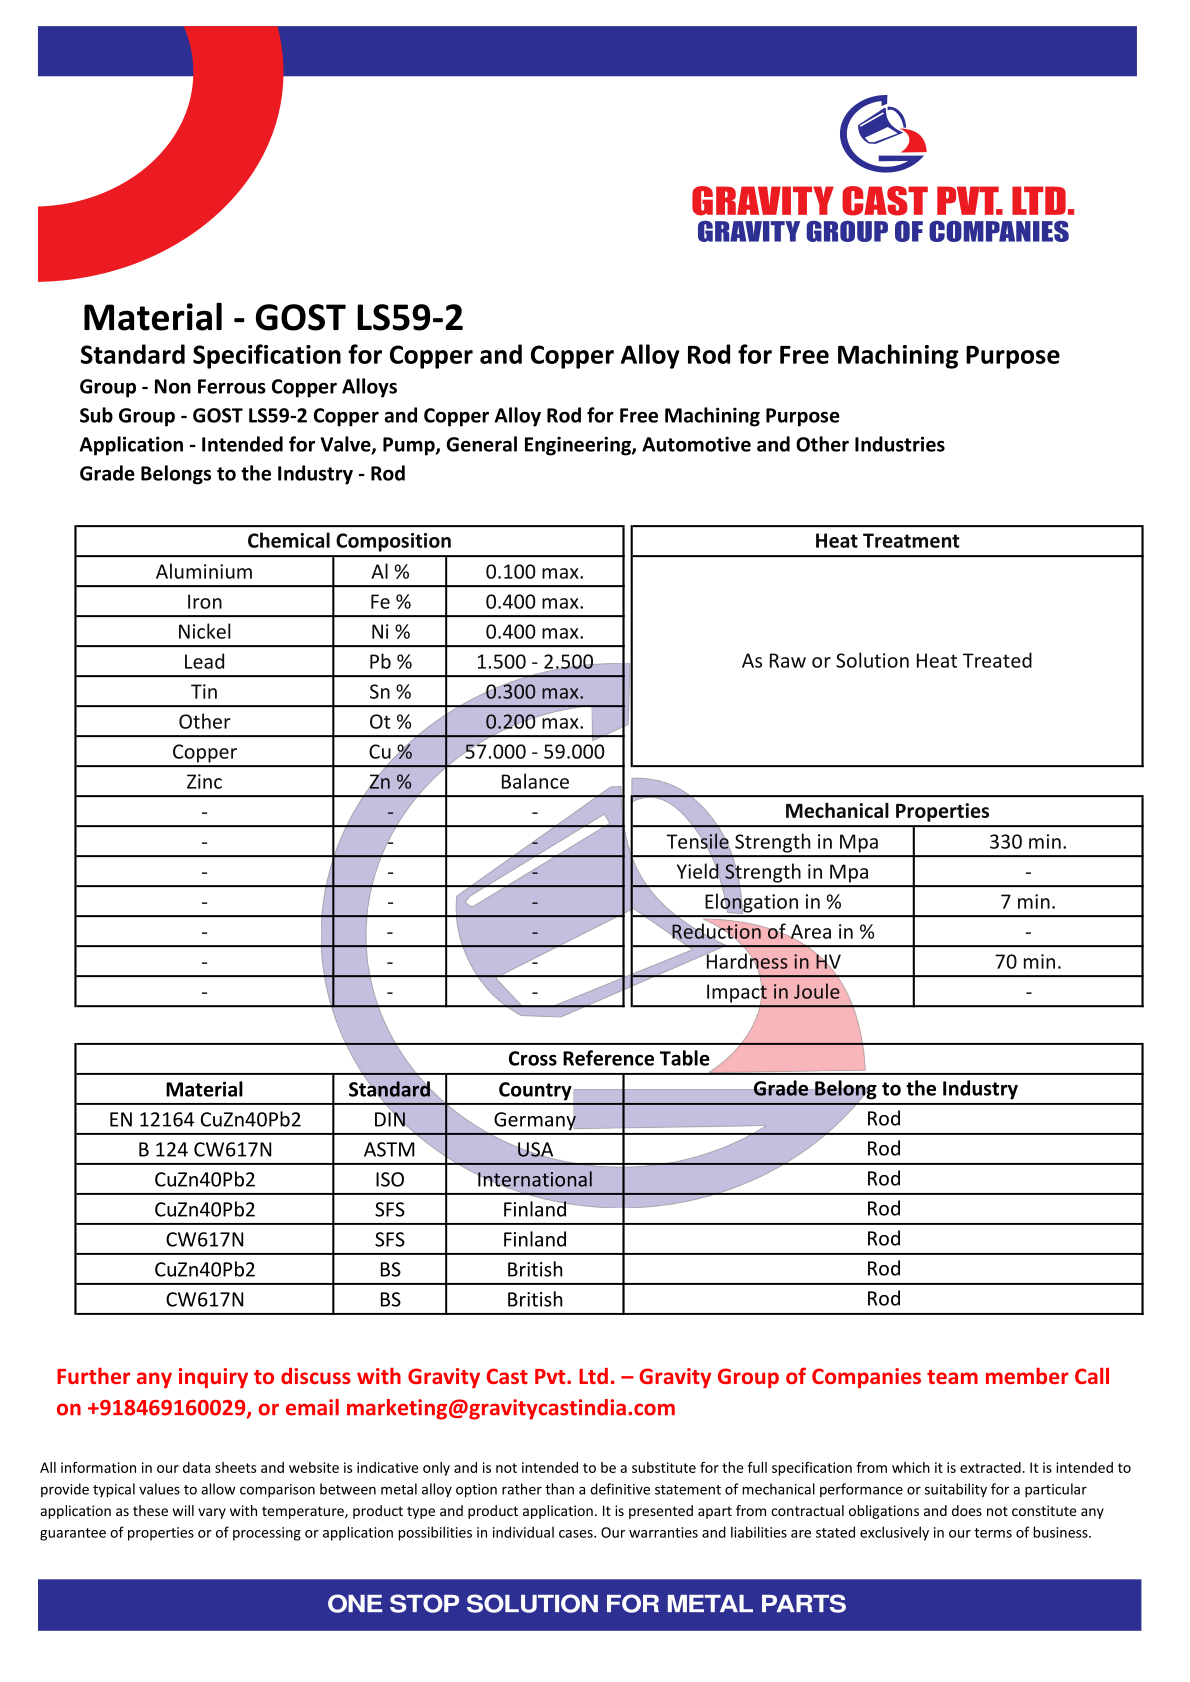 GOST LS59-2.pdf